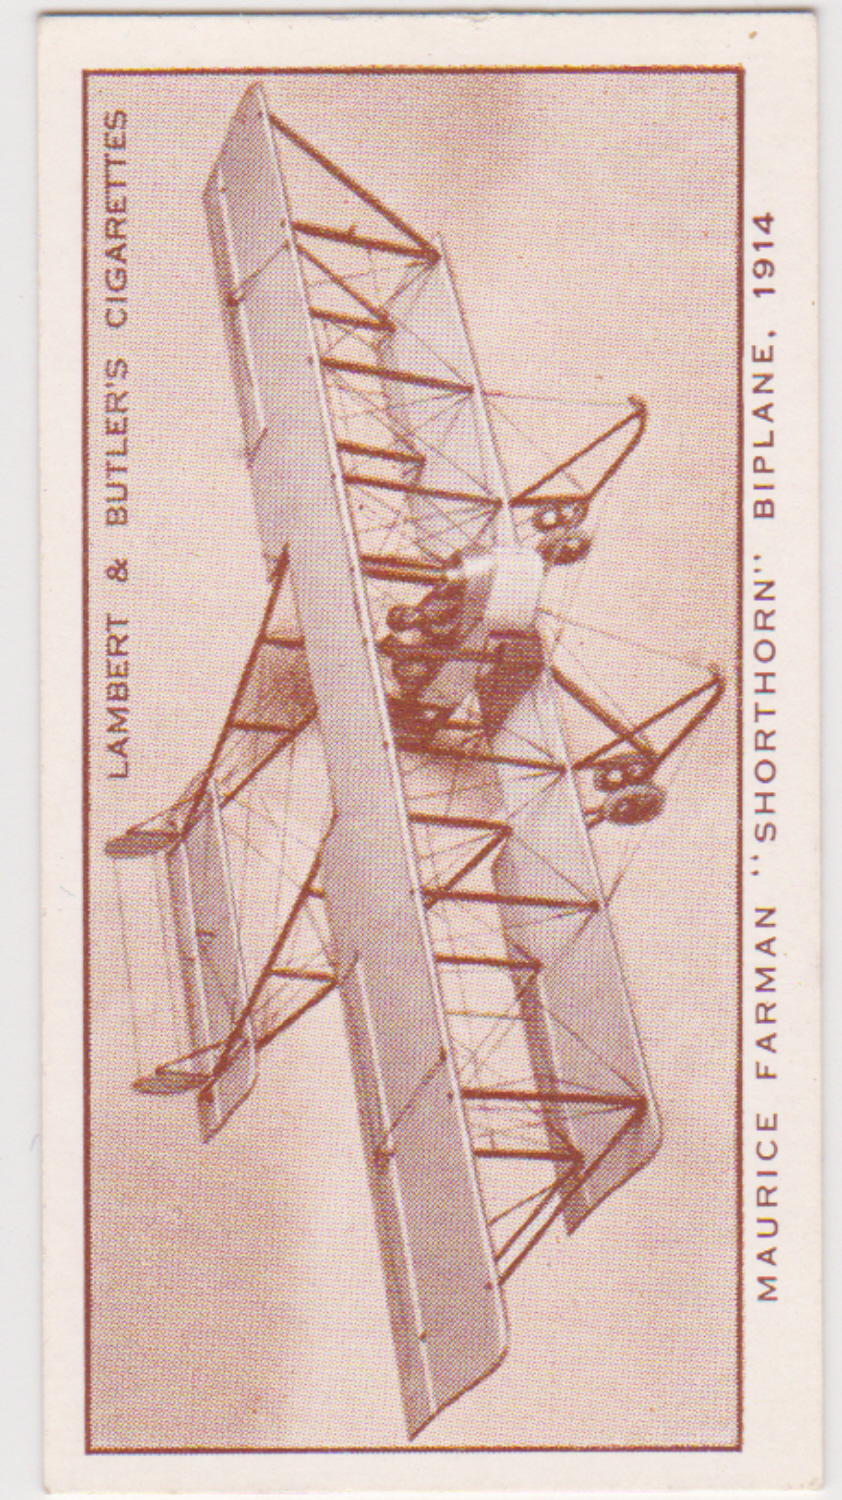 Lambert & Butler A History of Aviation No17